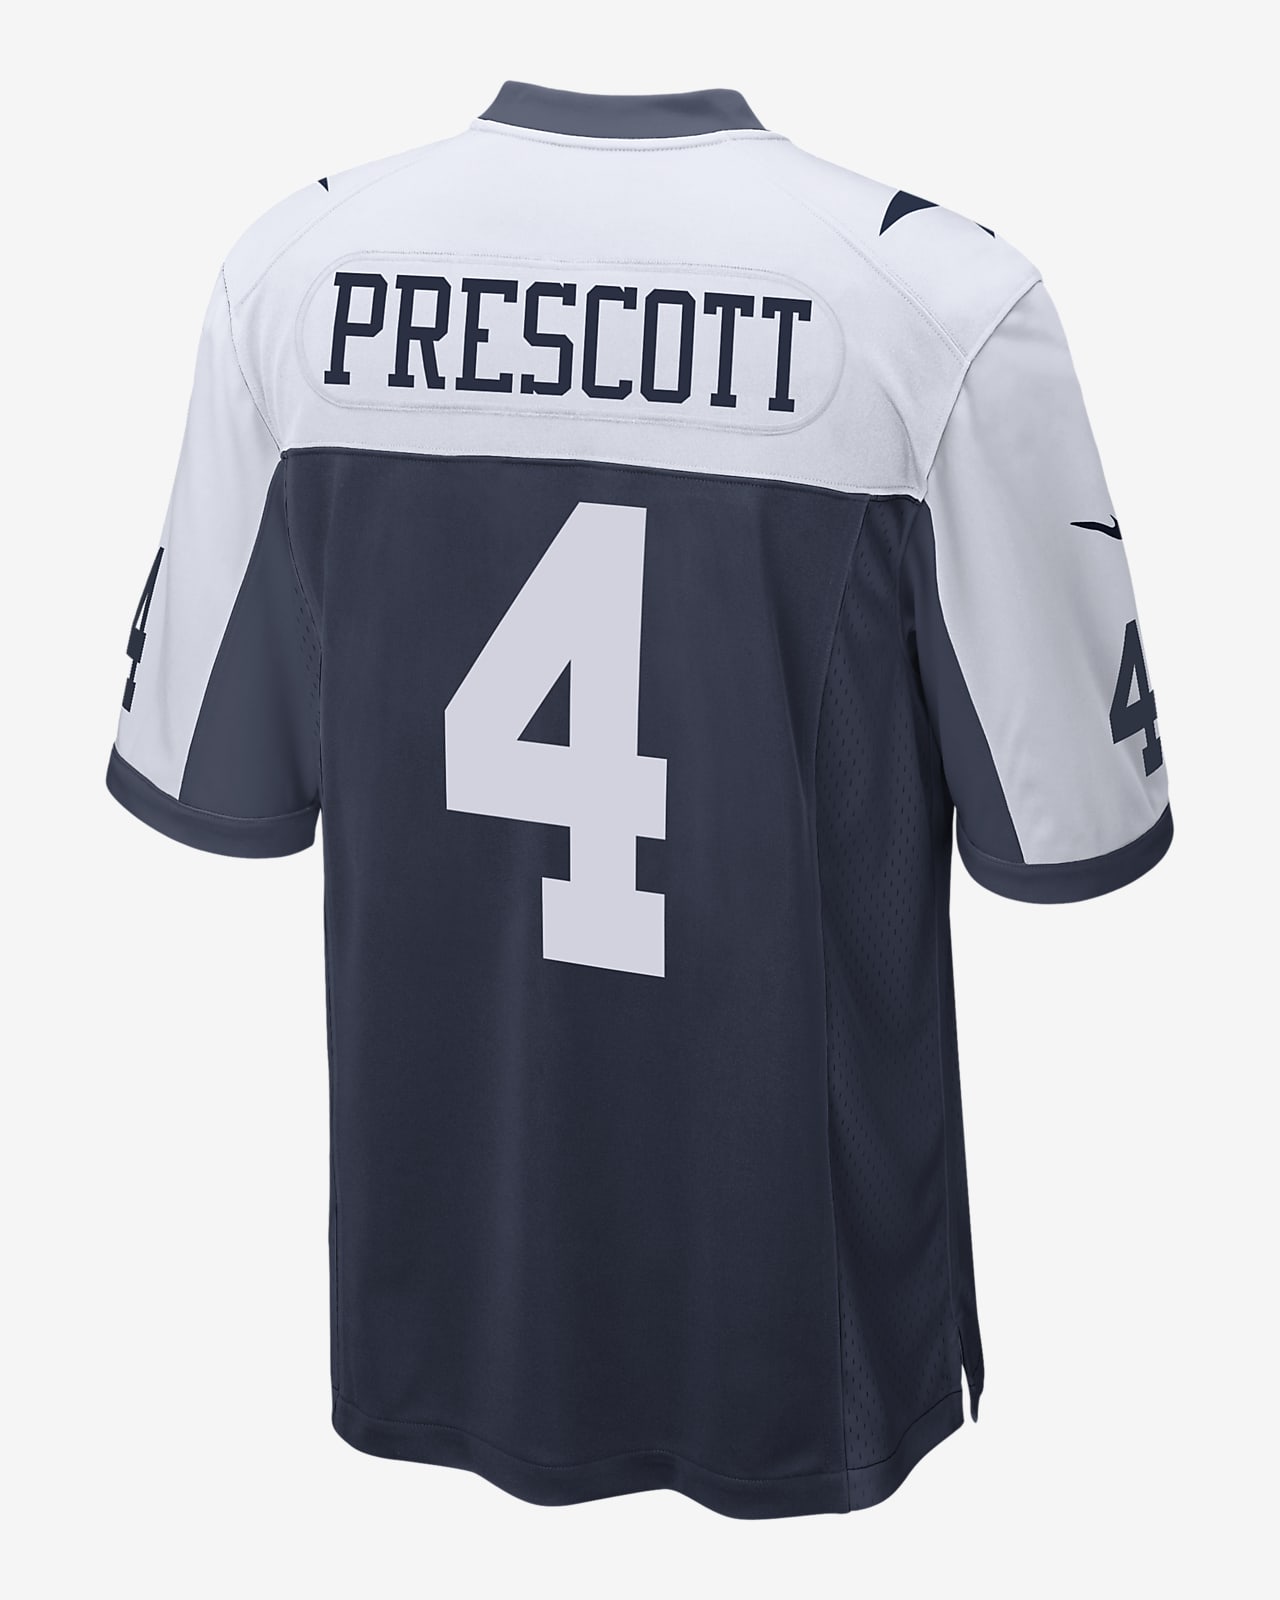 NFL Dallas Cowboys (Dak Prescott) Men's Game Football Jersey. Nike.com